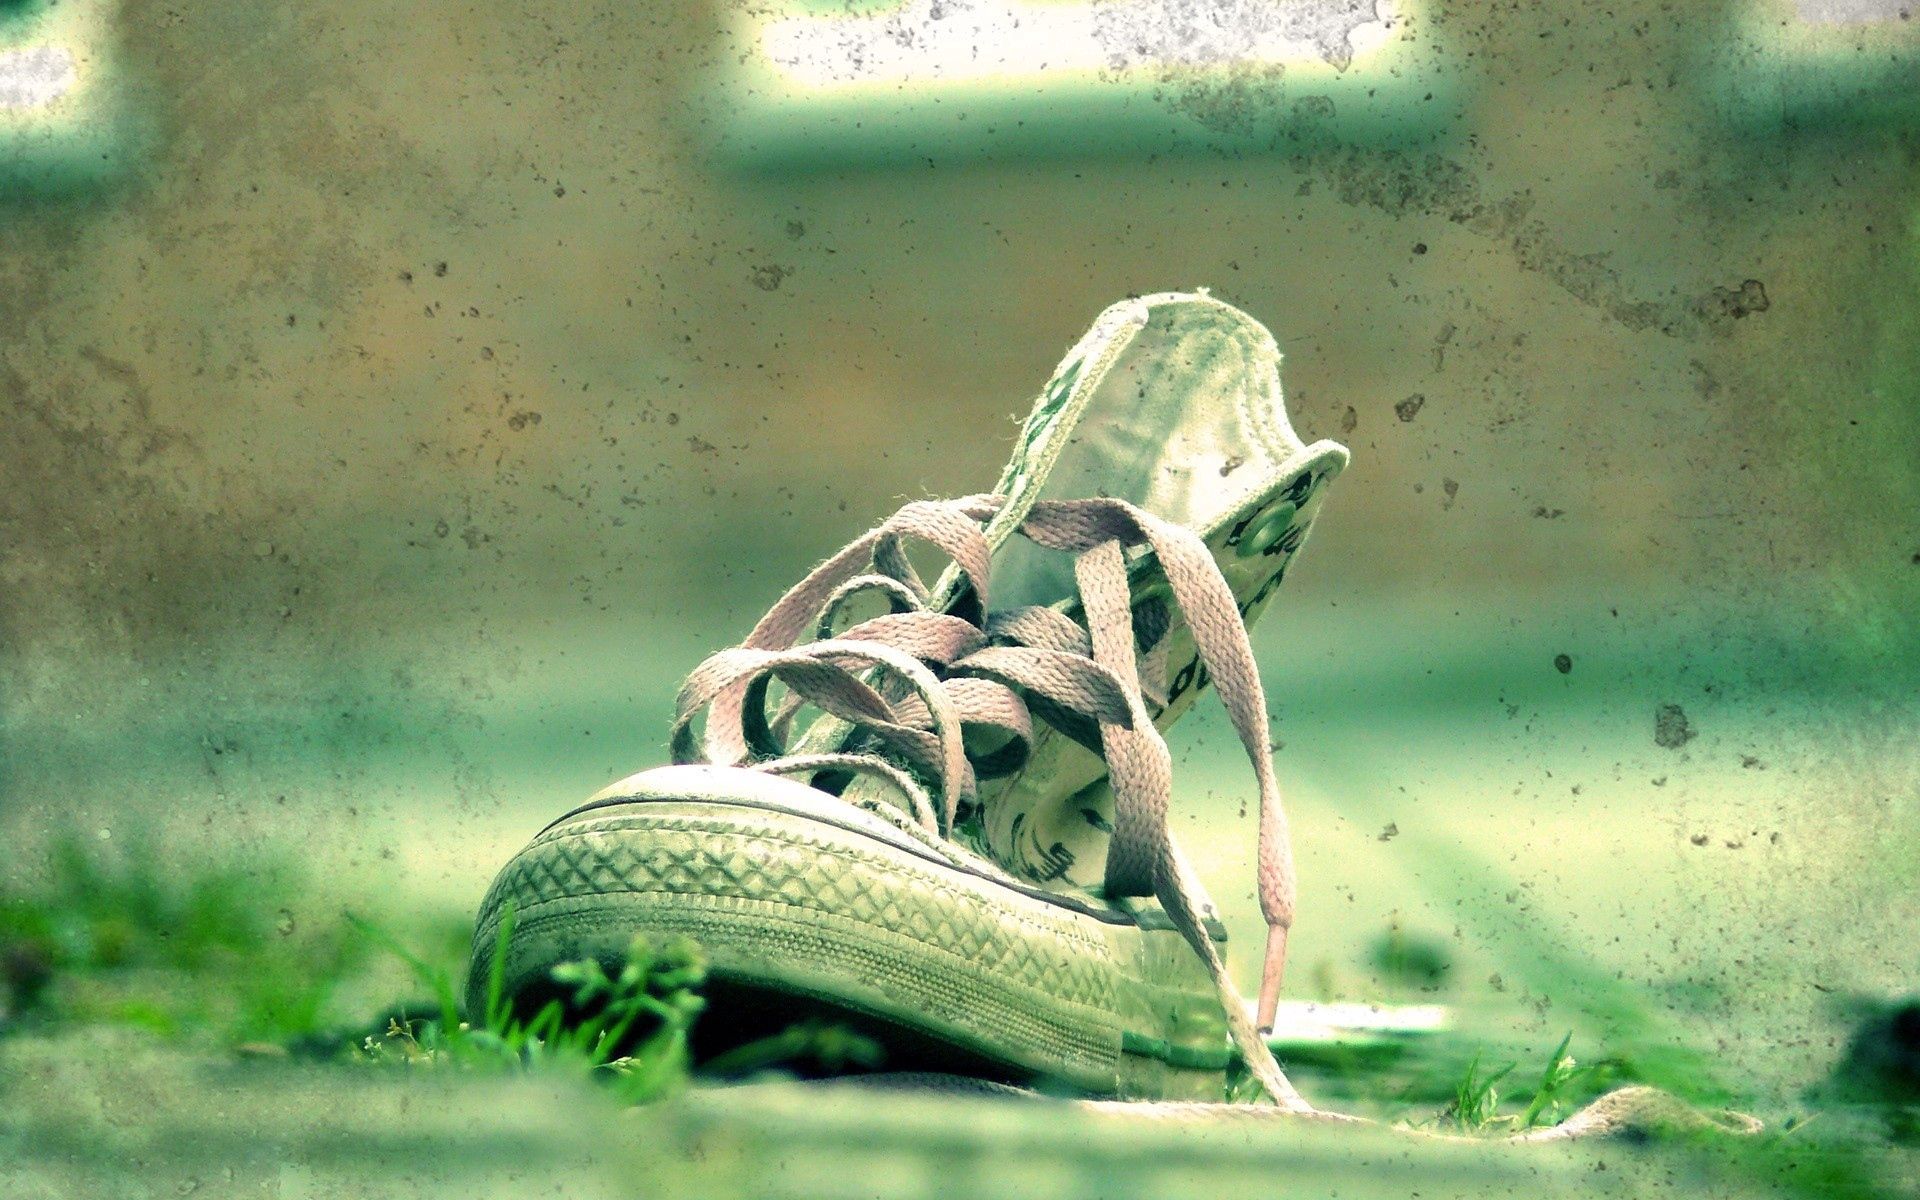 grass, miscellanea, miscellaneous, sneakers, mud, dirt, shoes, laces, shoelaces 1080p